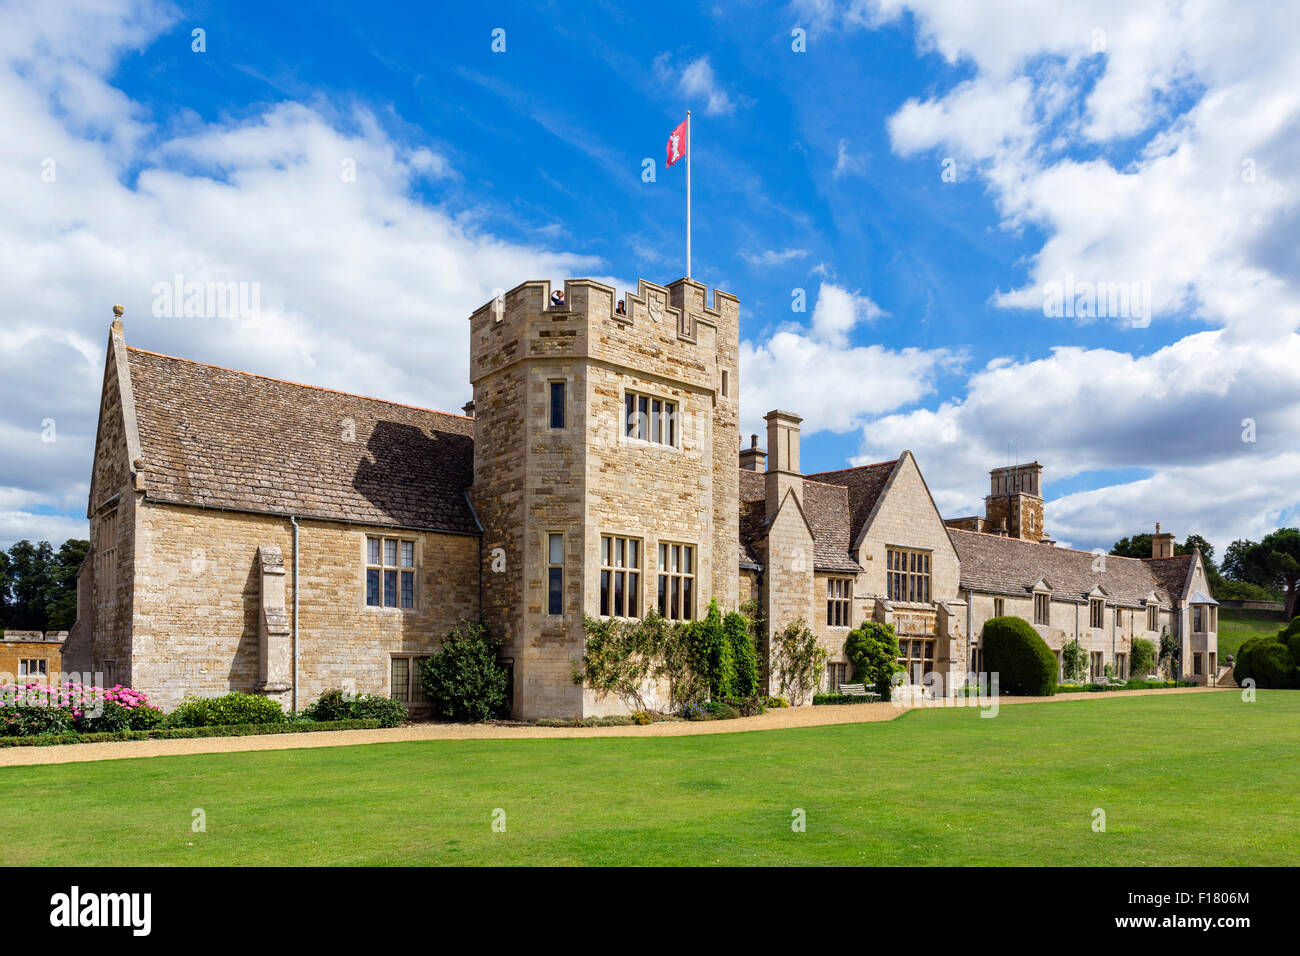 Rockingham Castle, near Corby, Northamptonshire, England, UK Stock Photo